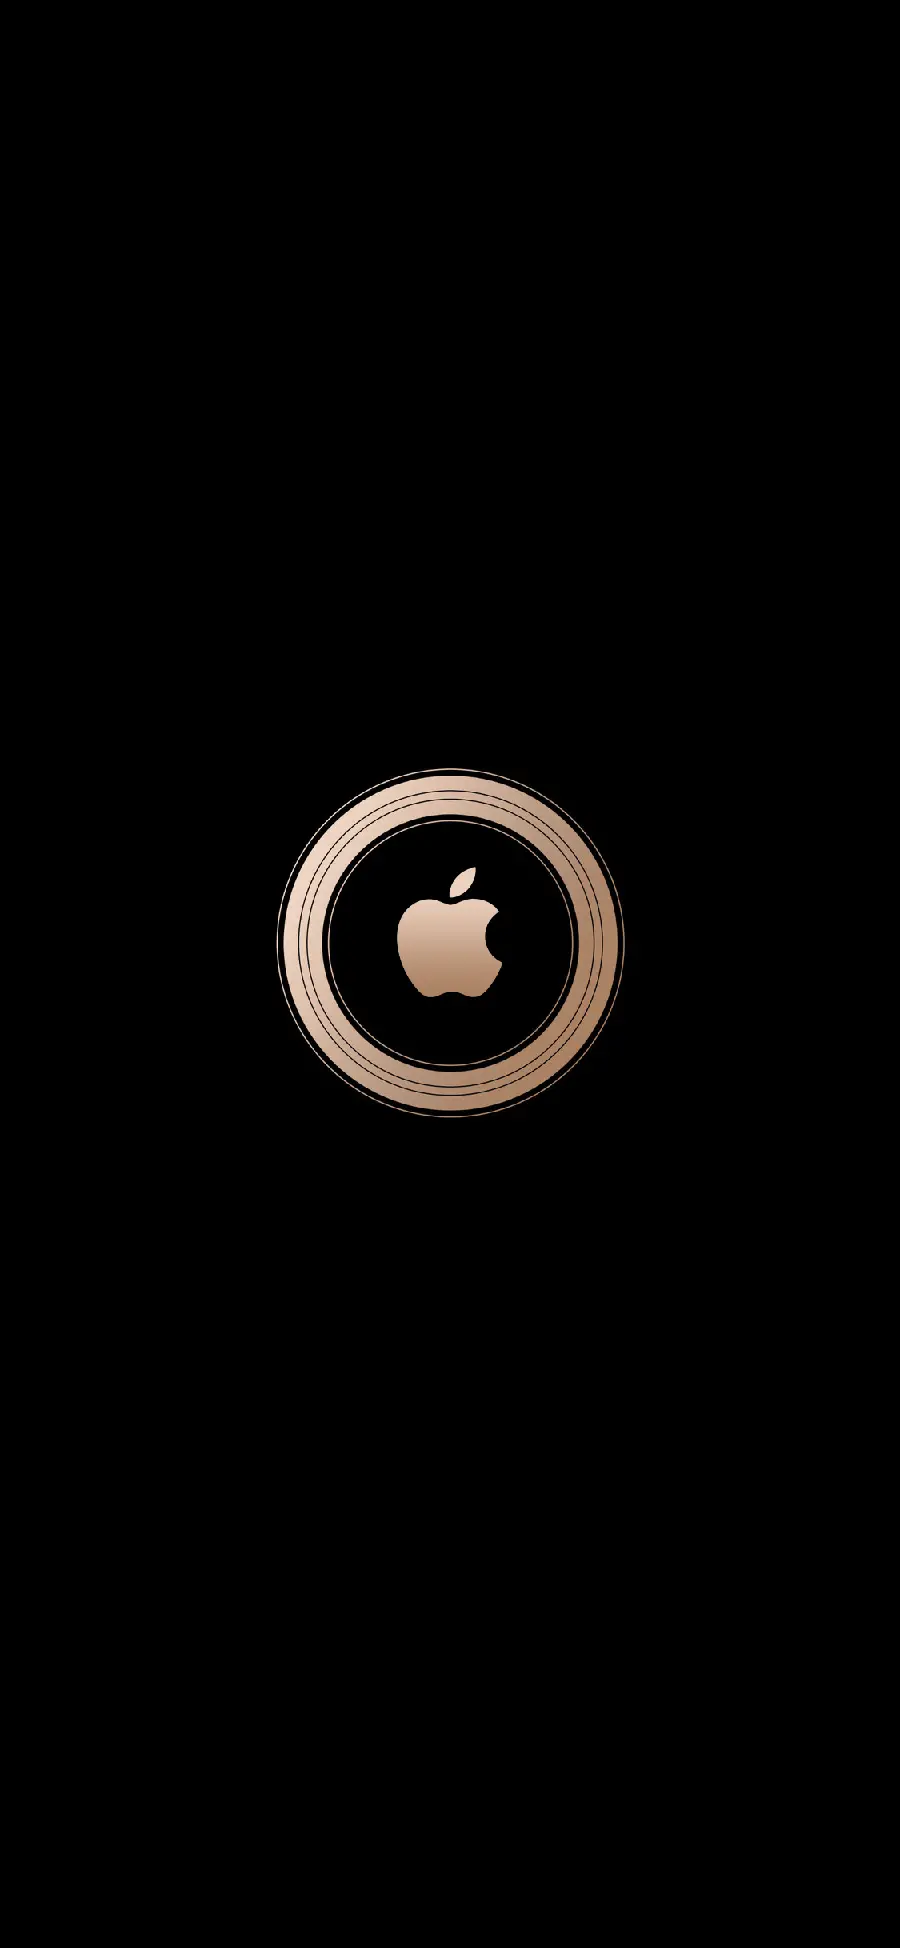 آرم اپل در طرحی جدید و مبتکرانه با رنگی متمایز